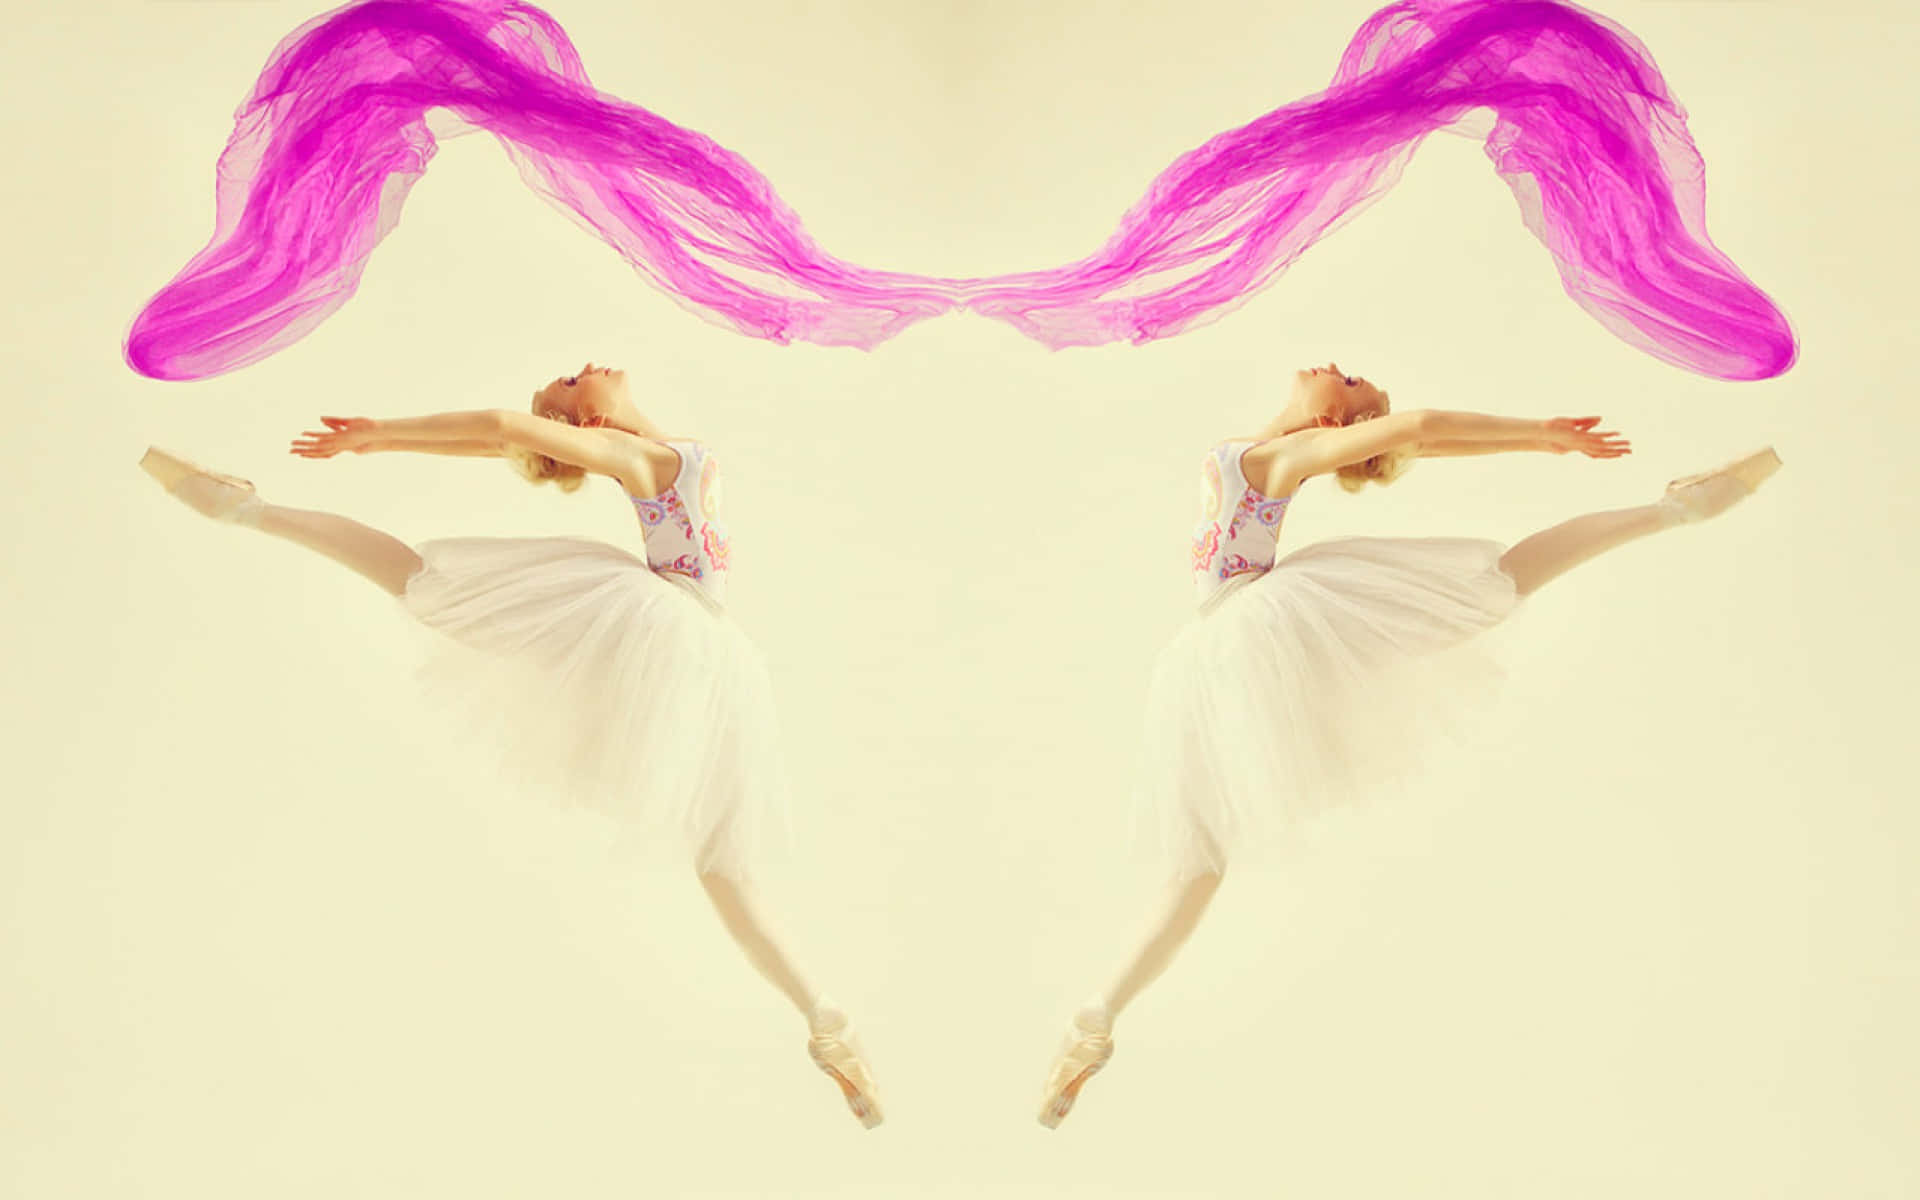 Ballerina Dancer Twin Watercolor Blot Art Background